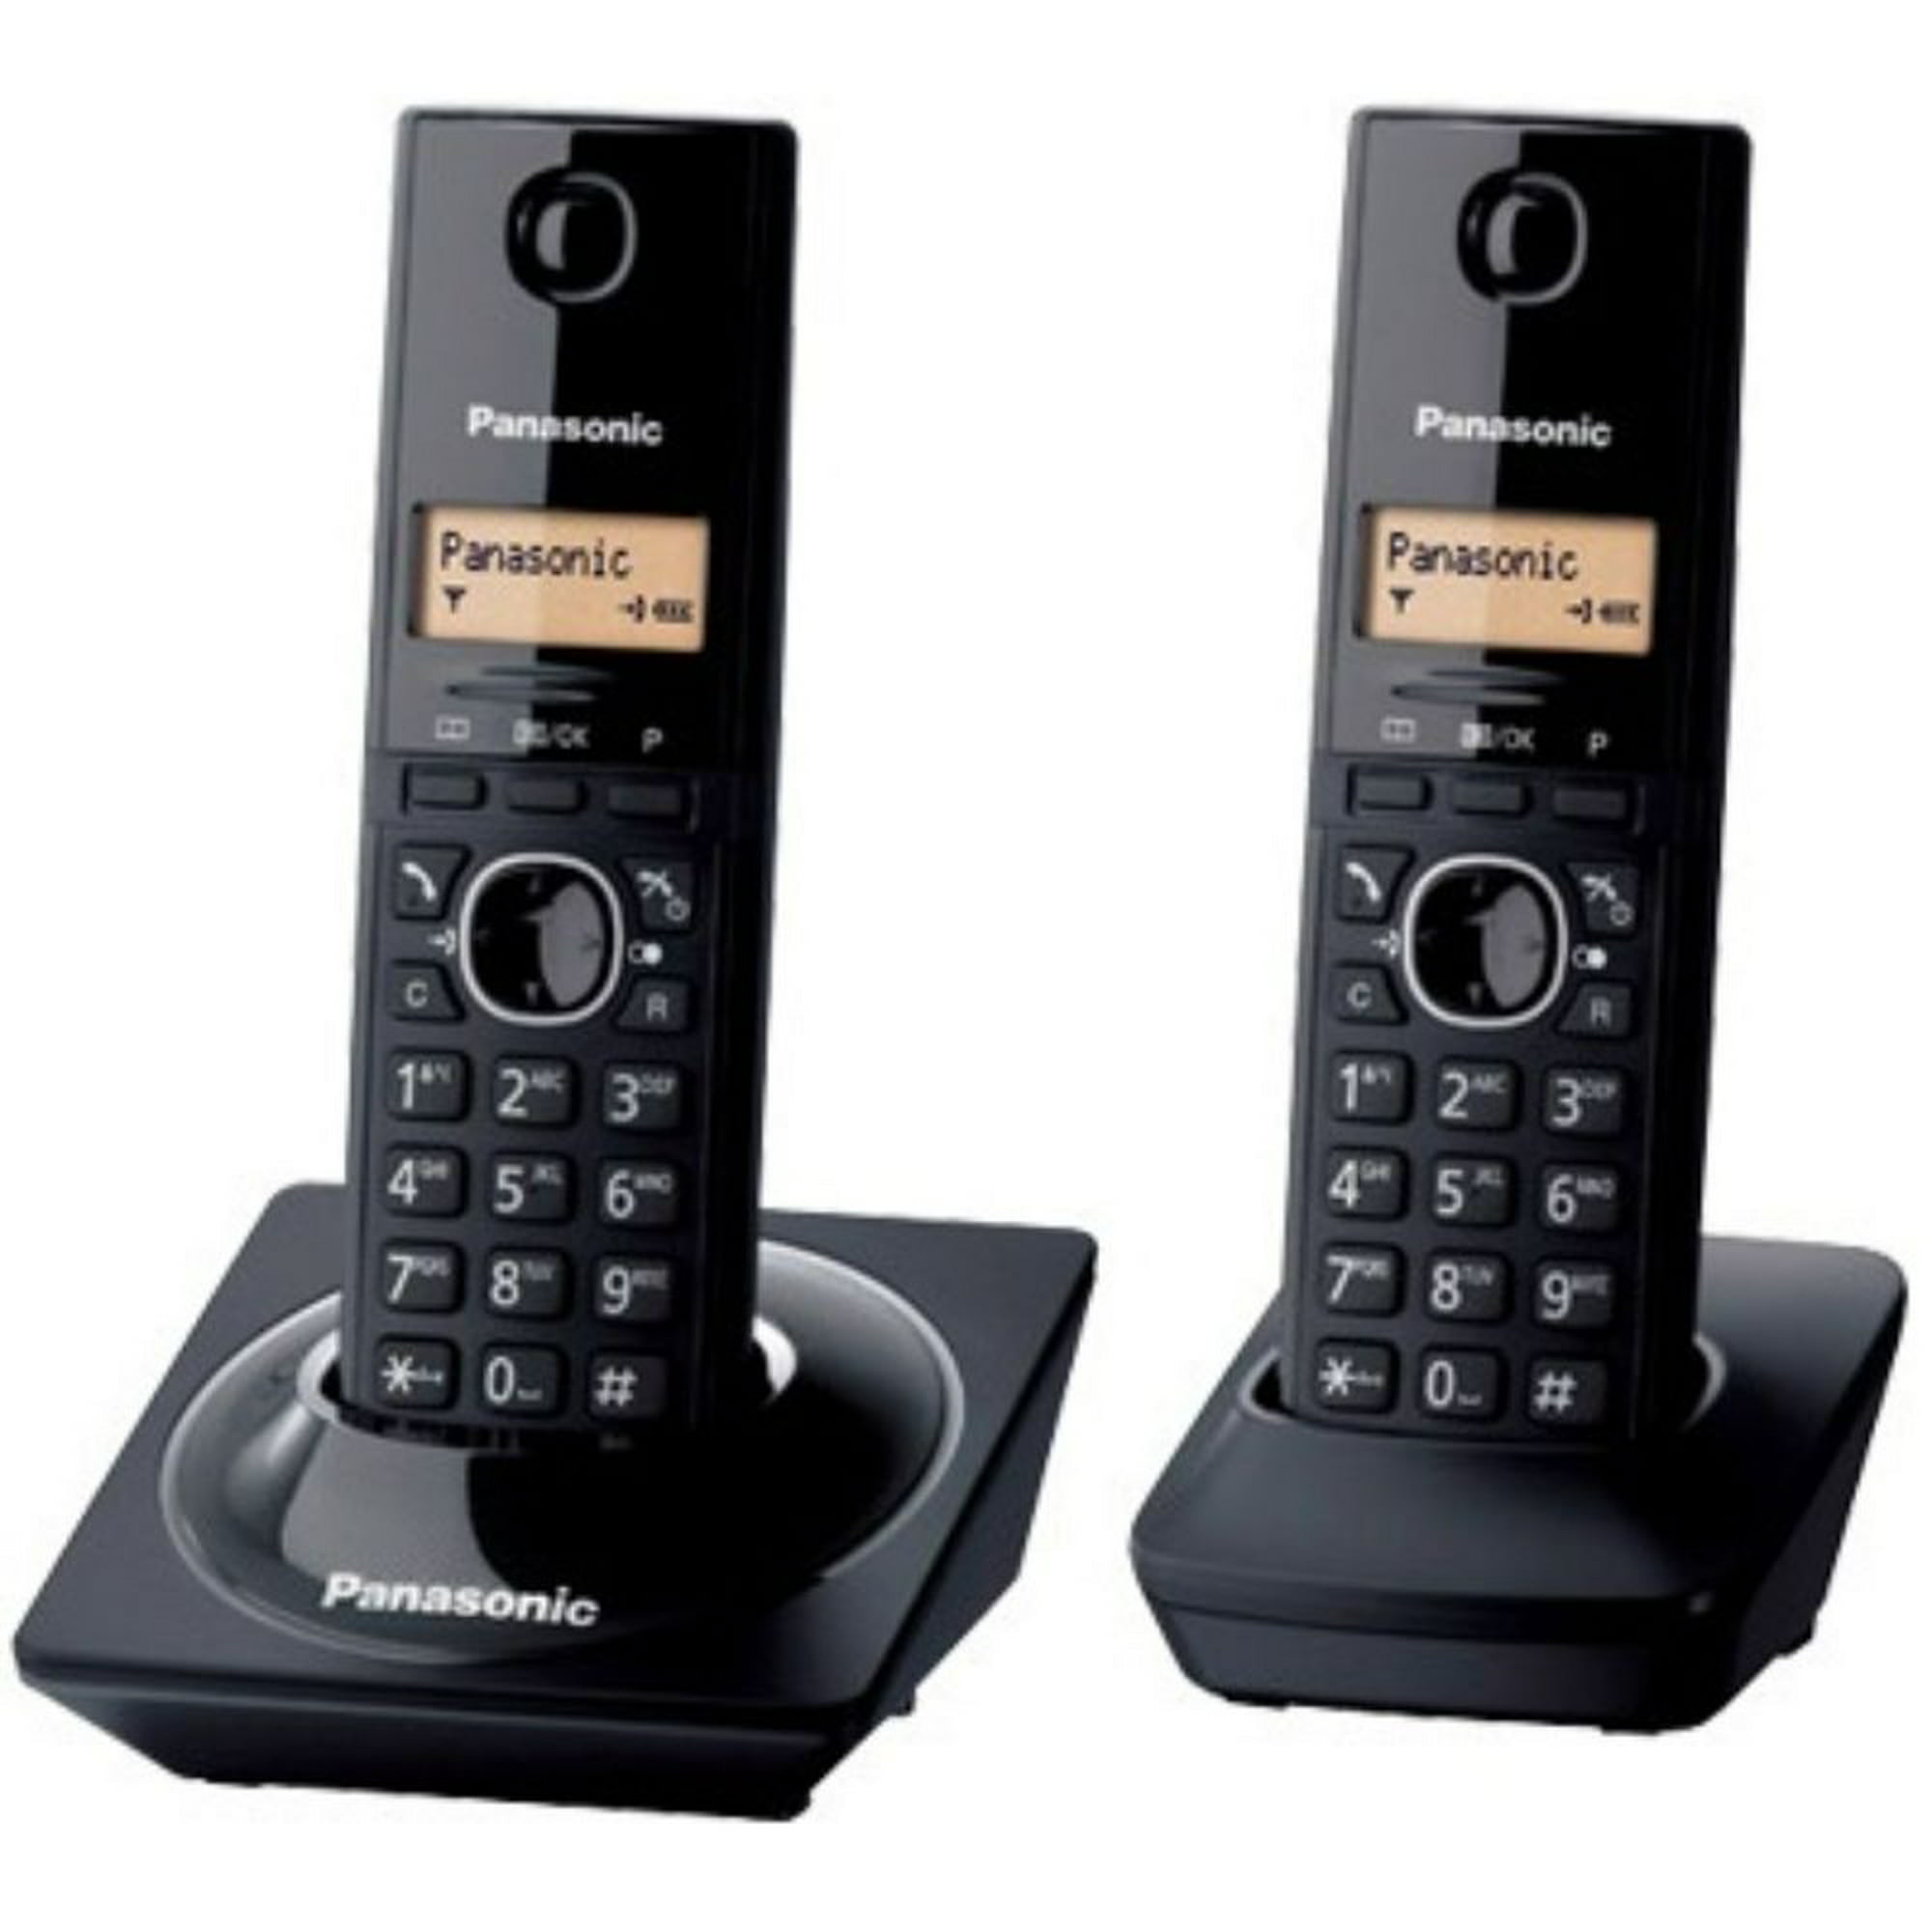 $299.03 - Bodega Aurrerá - Paquete de 2 teléfonos inalámbricos marca  Motorola para línea de casa con el 30% de descuento - LiquidaZona